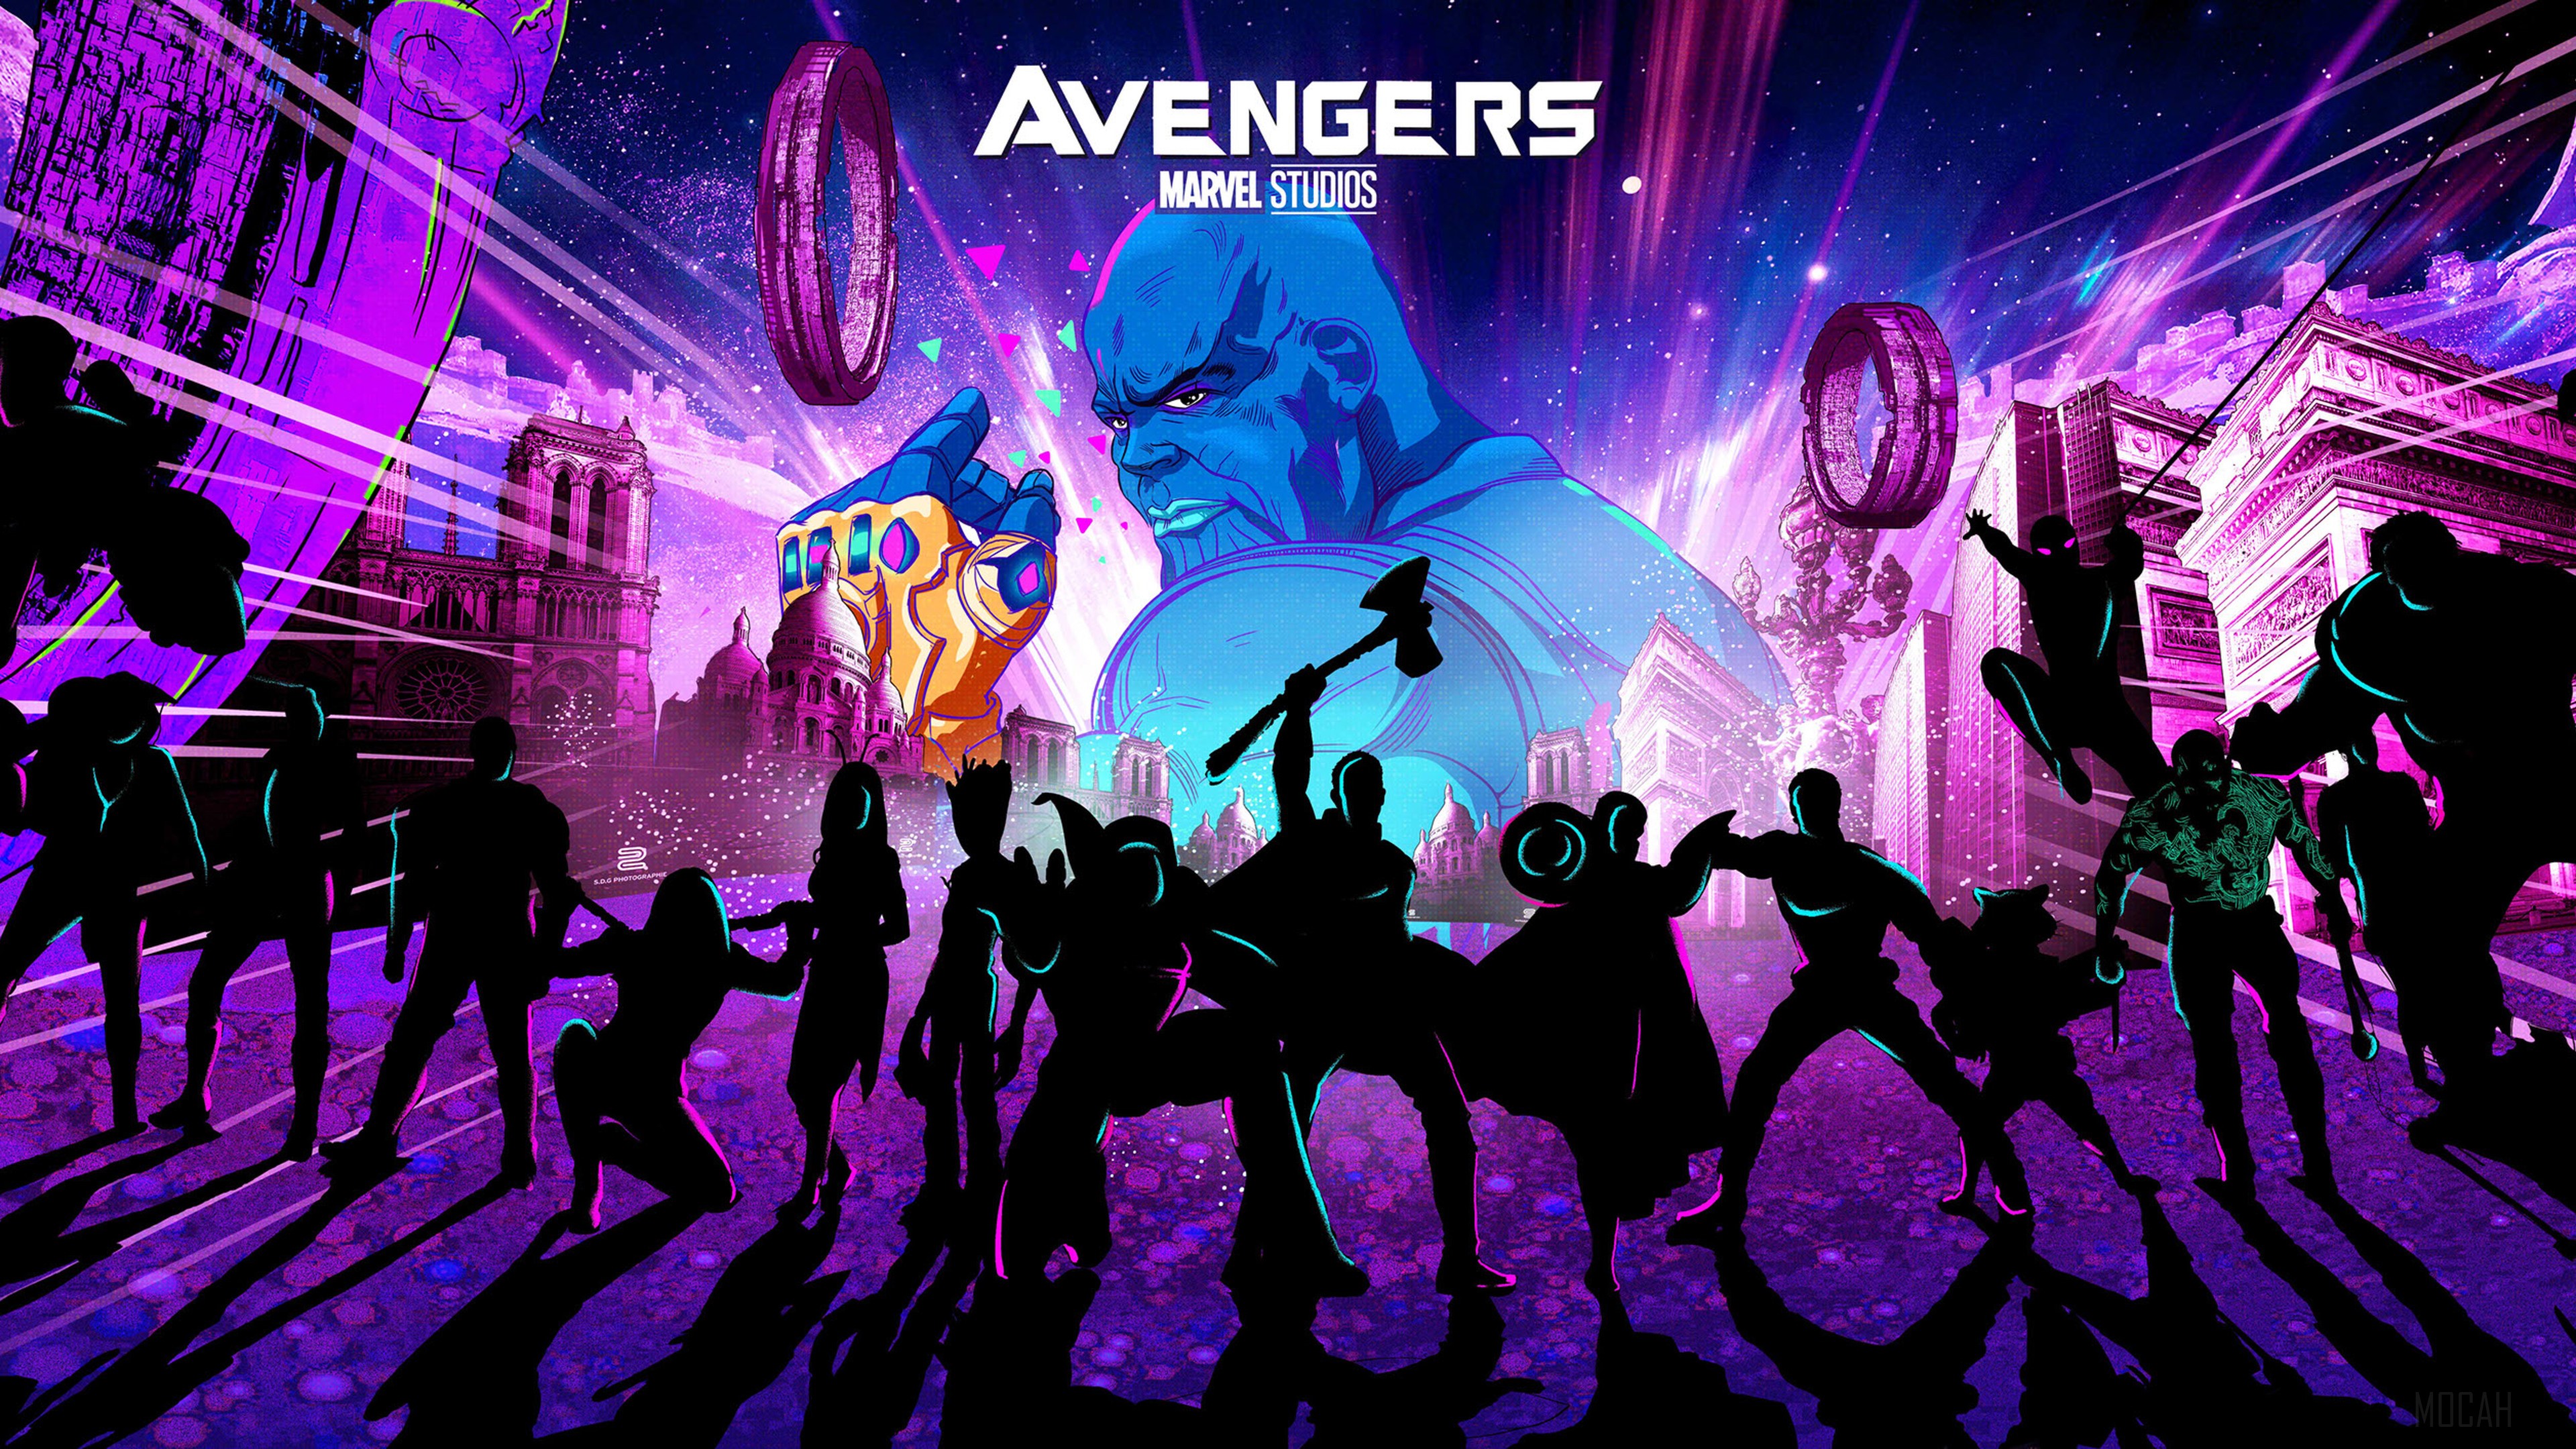 Avengers Endgame New Artwork 4k wallpaper. Mocah HD Wallpaper